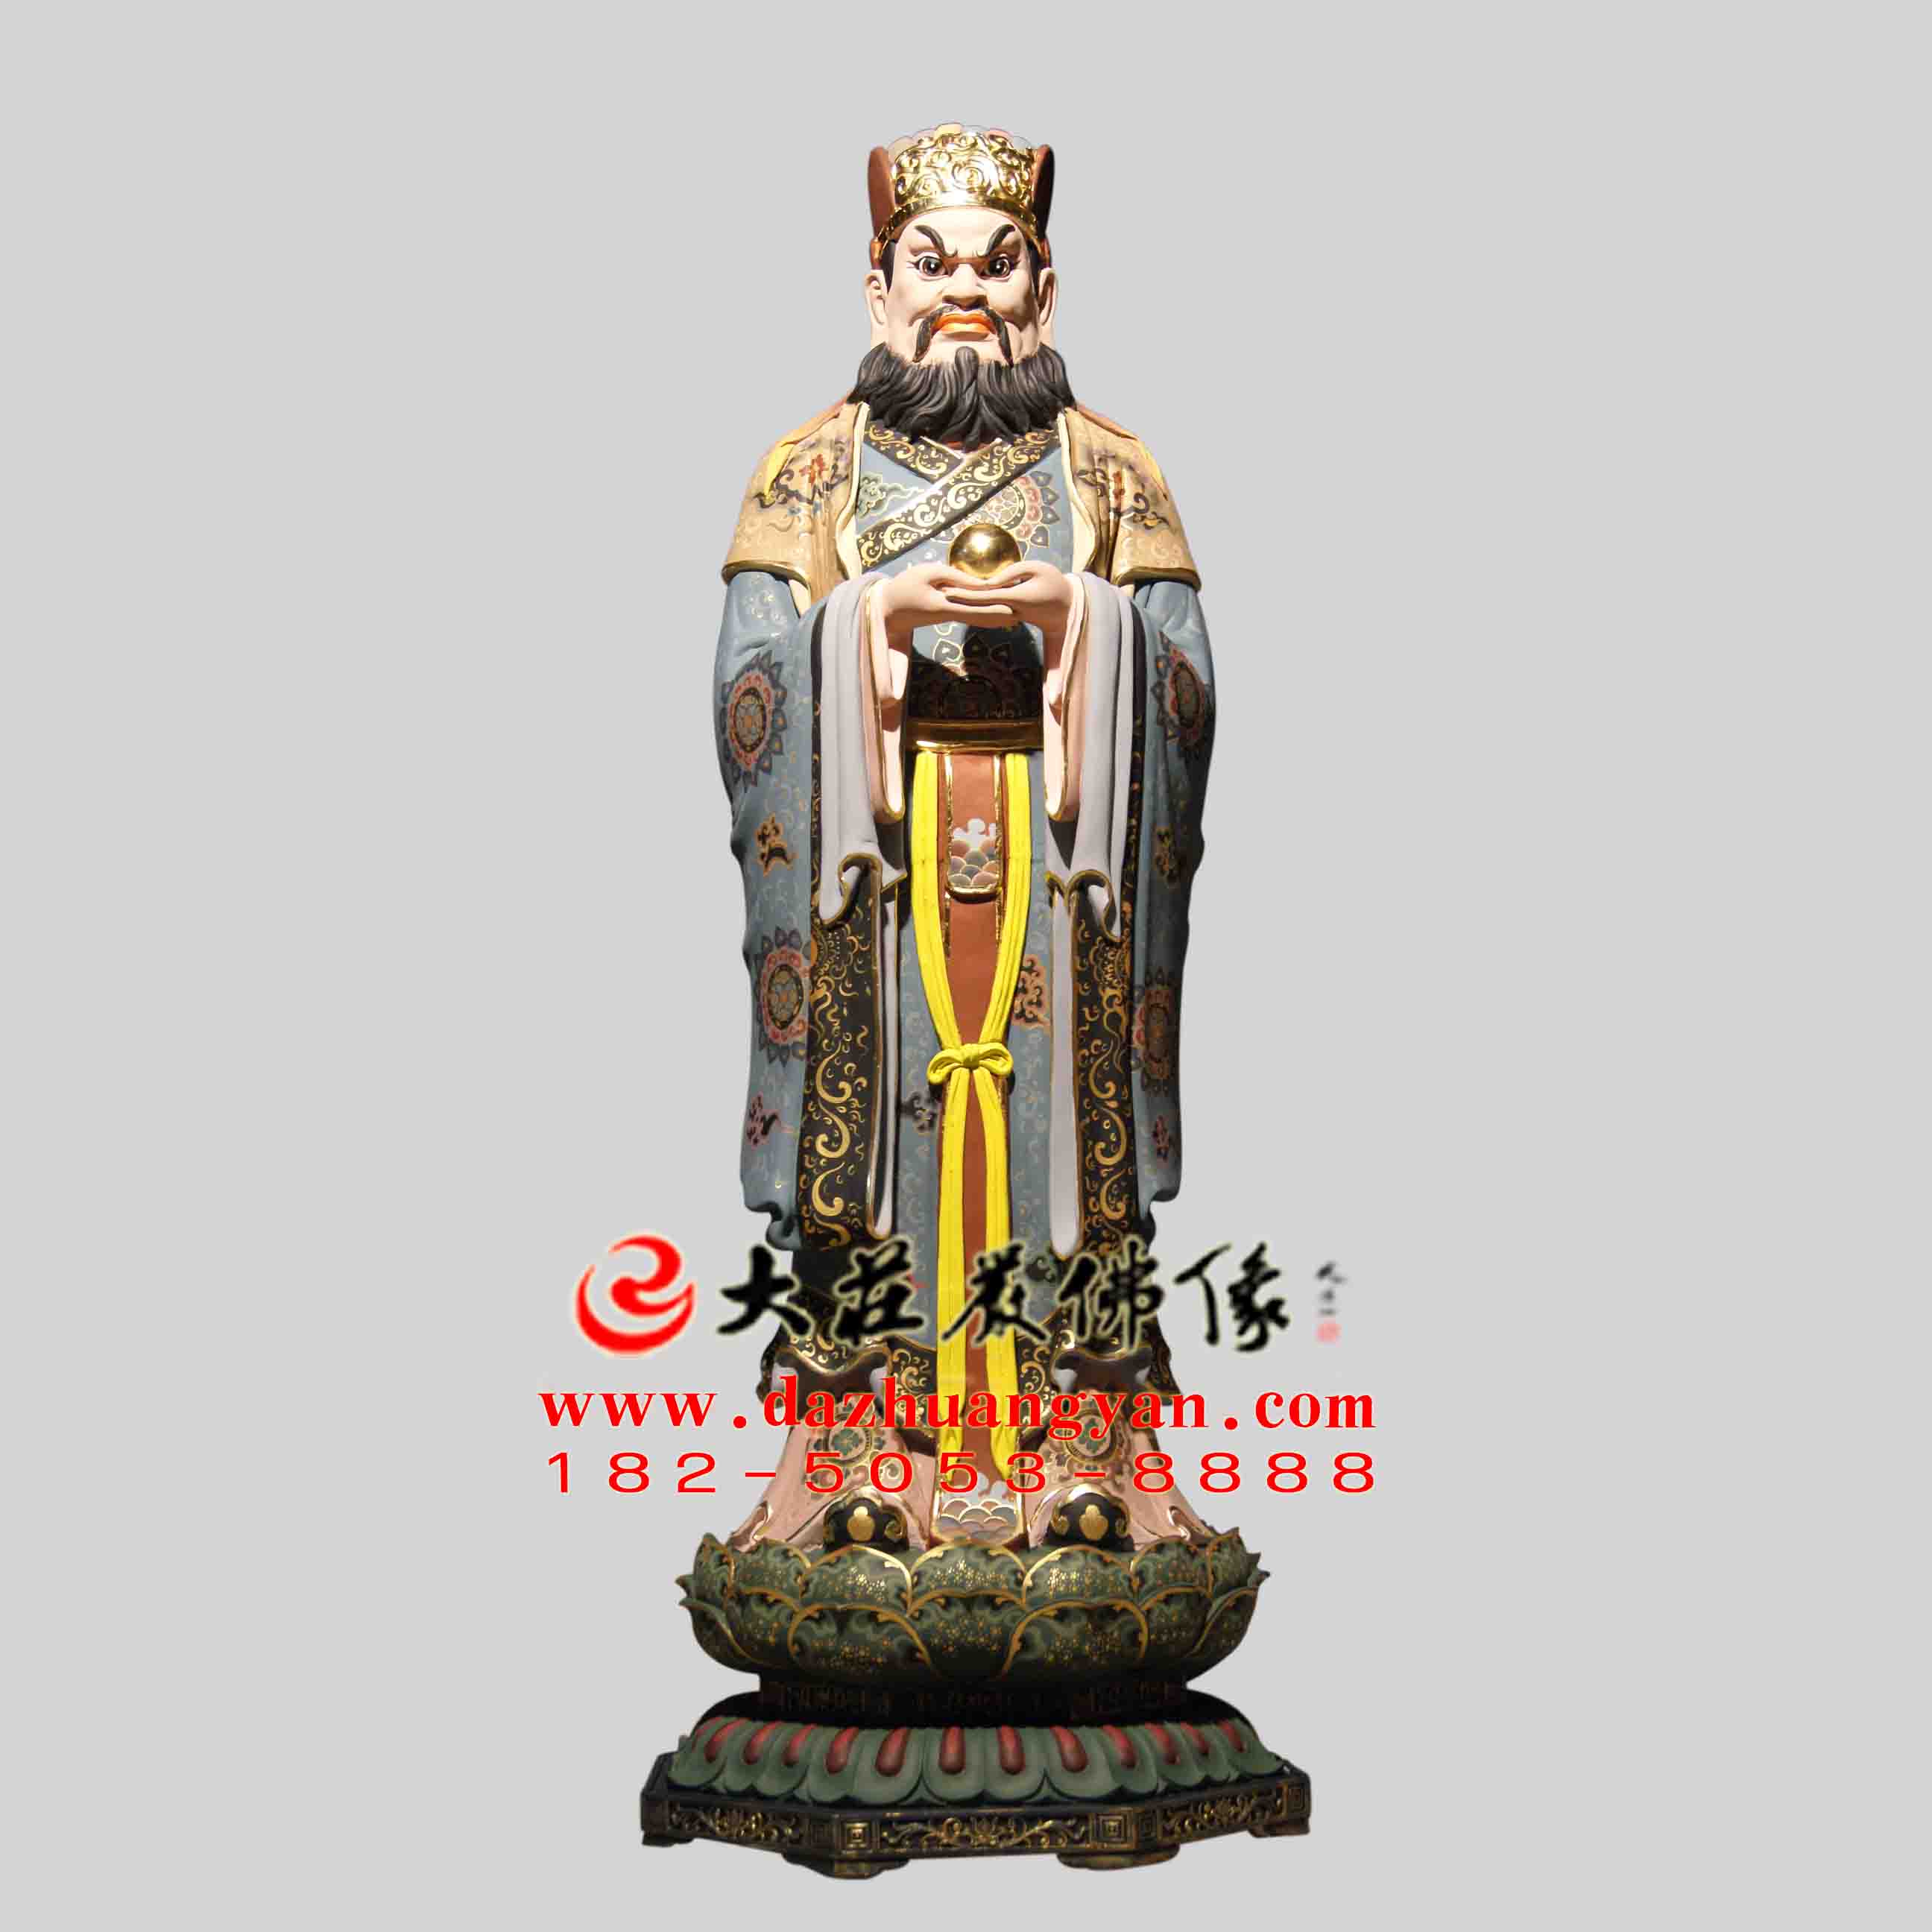 地藏王弟了闵公彩绘描金塑像